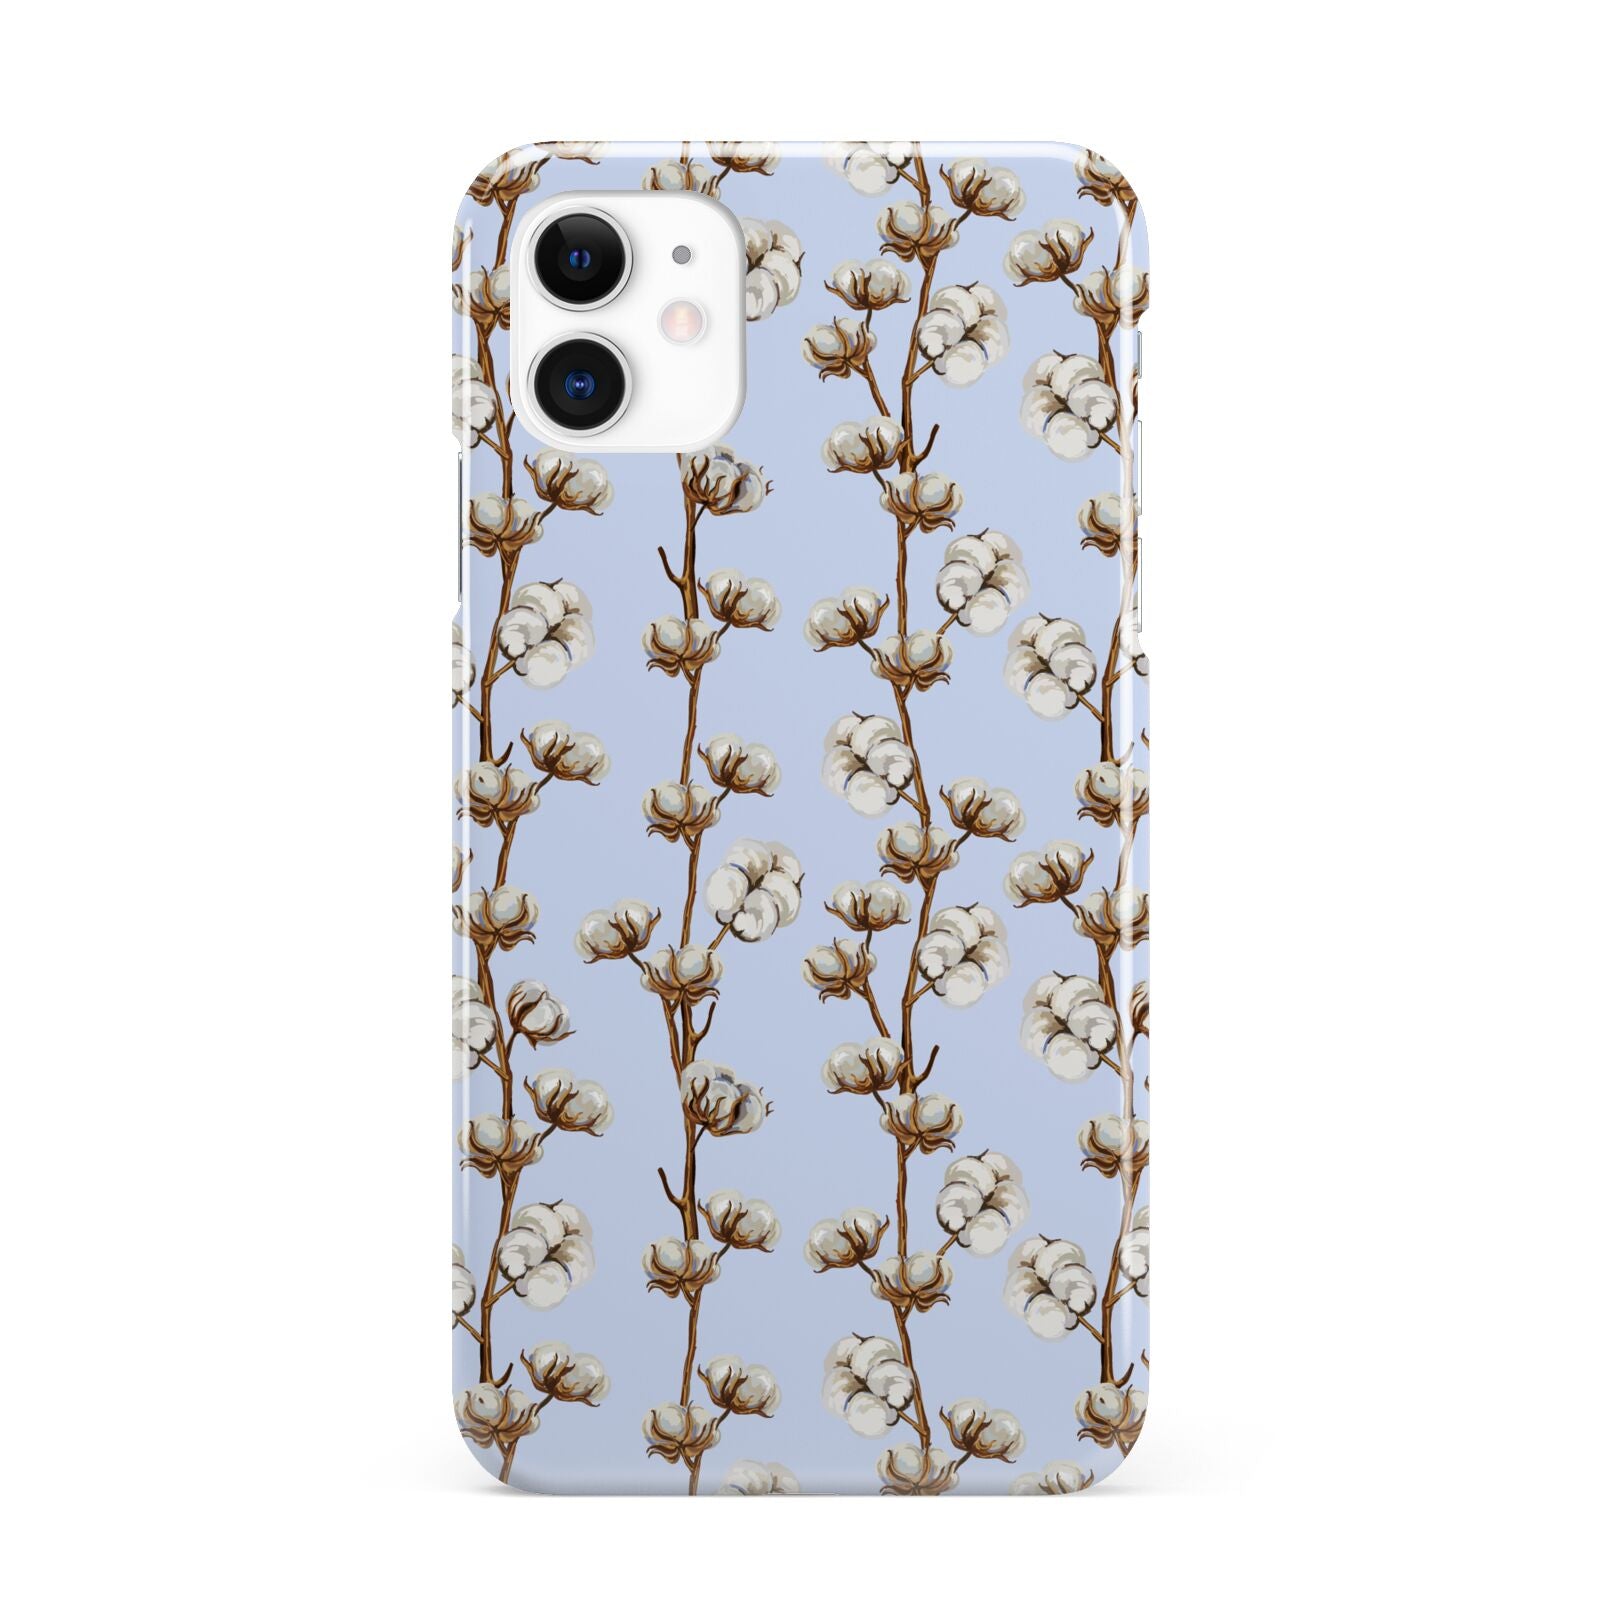 Cotton Branch iPhone 11 3D Snap Case